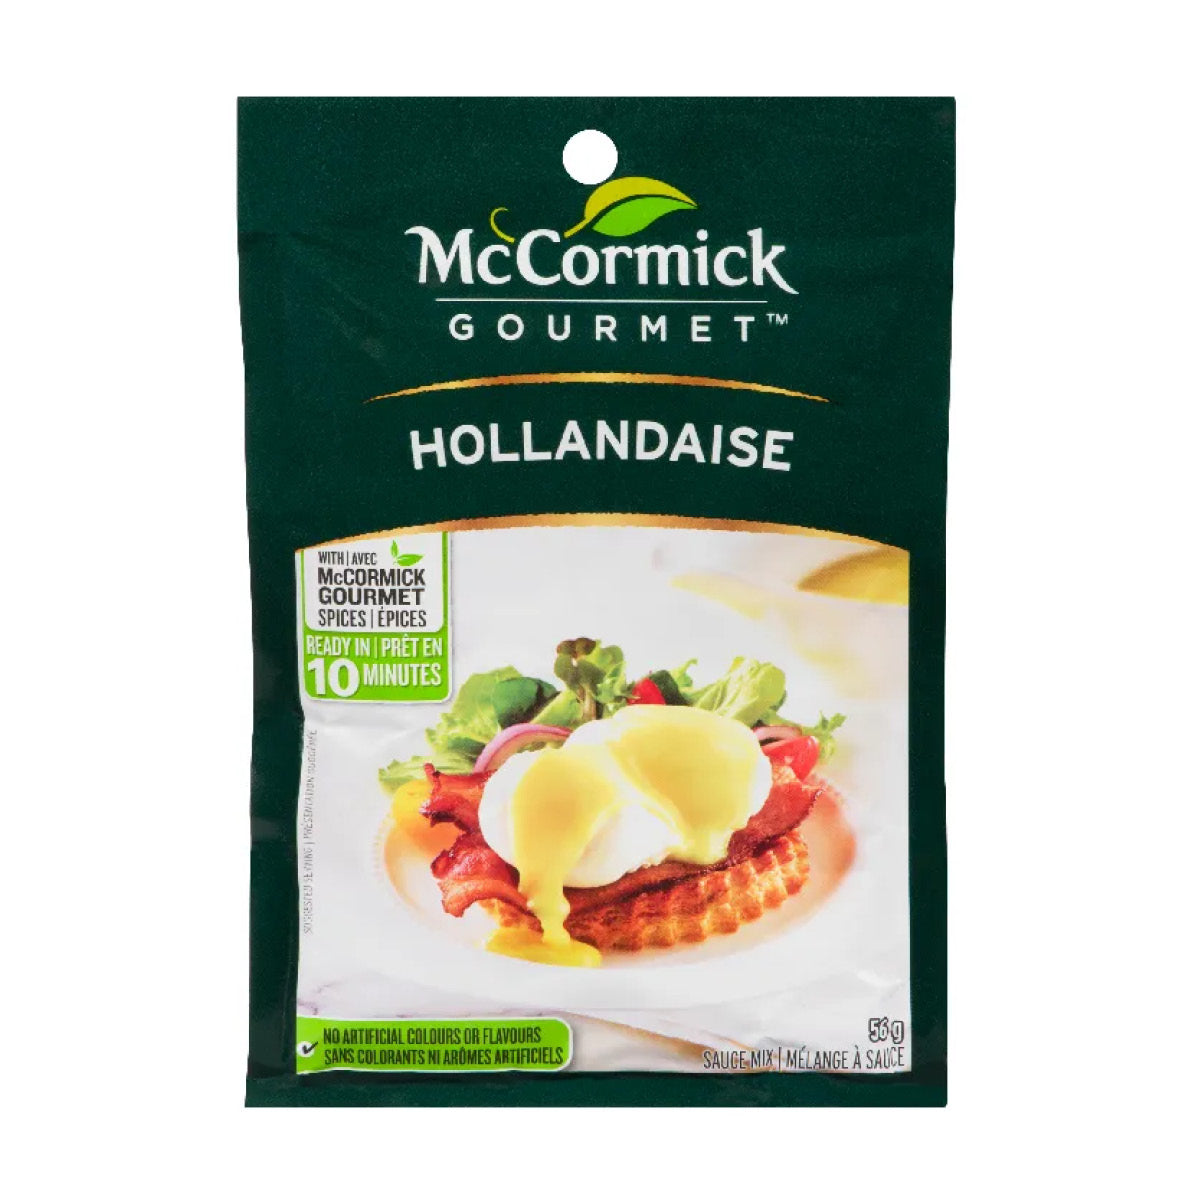 McCormick Hollandaise Sauce Mix, 56g